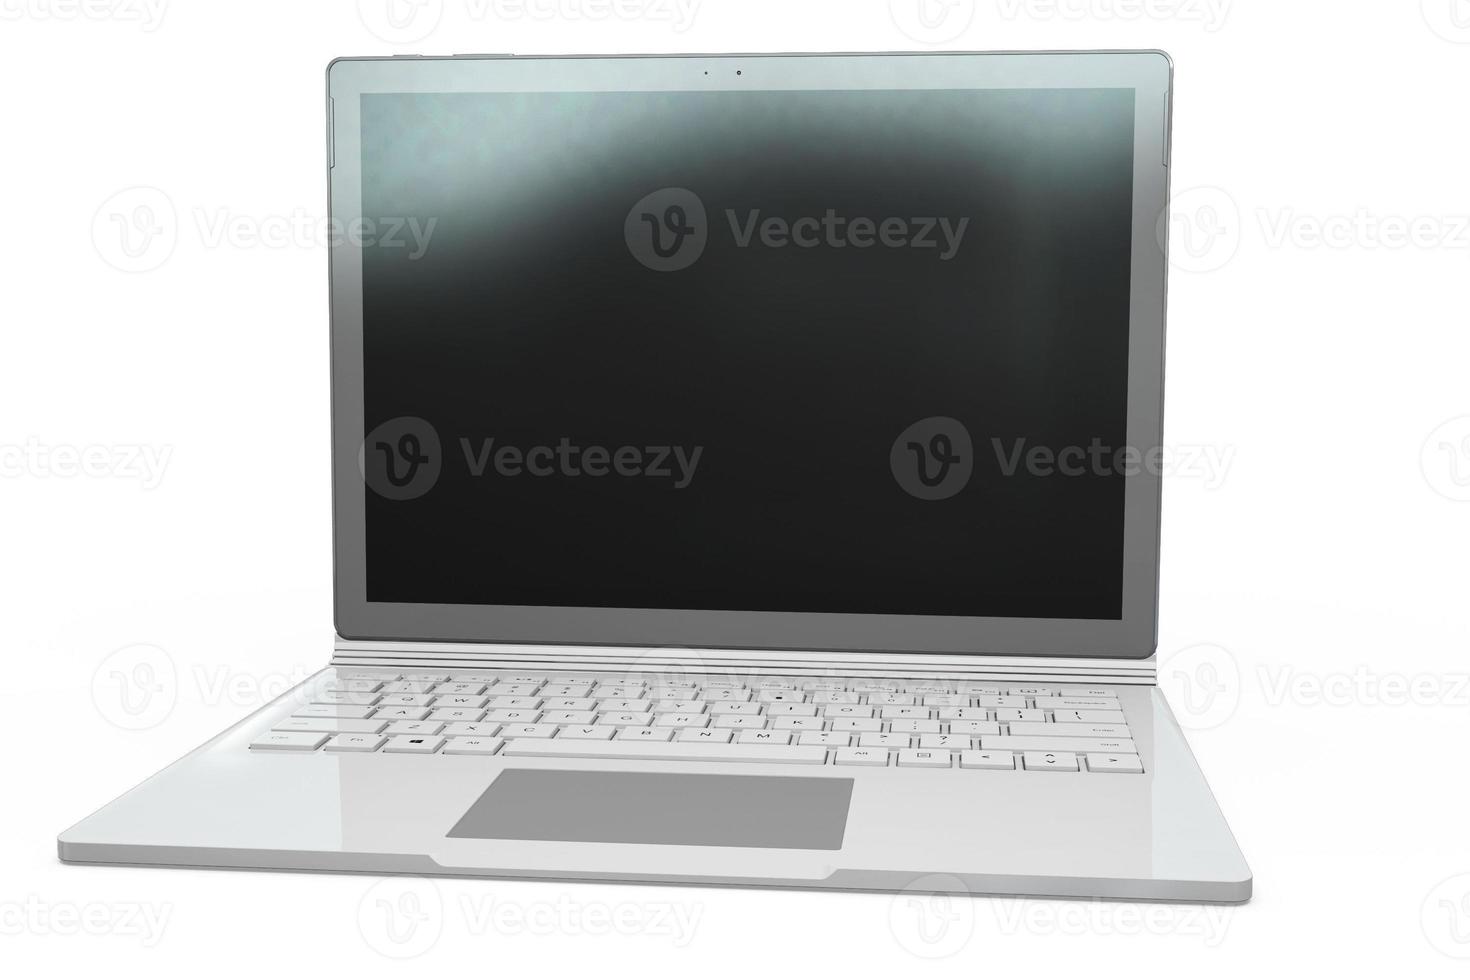 3D-weergave van laptop notebook mock up met witte achtergrond. technologiegadget voor hipster achtergrondconcept. hoge resolutie foto